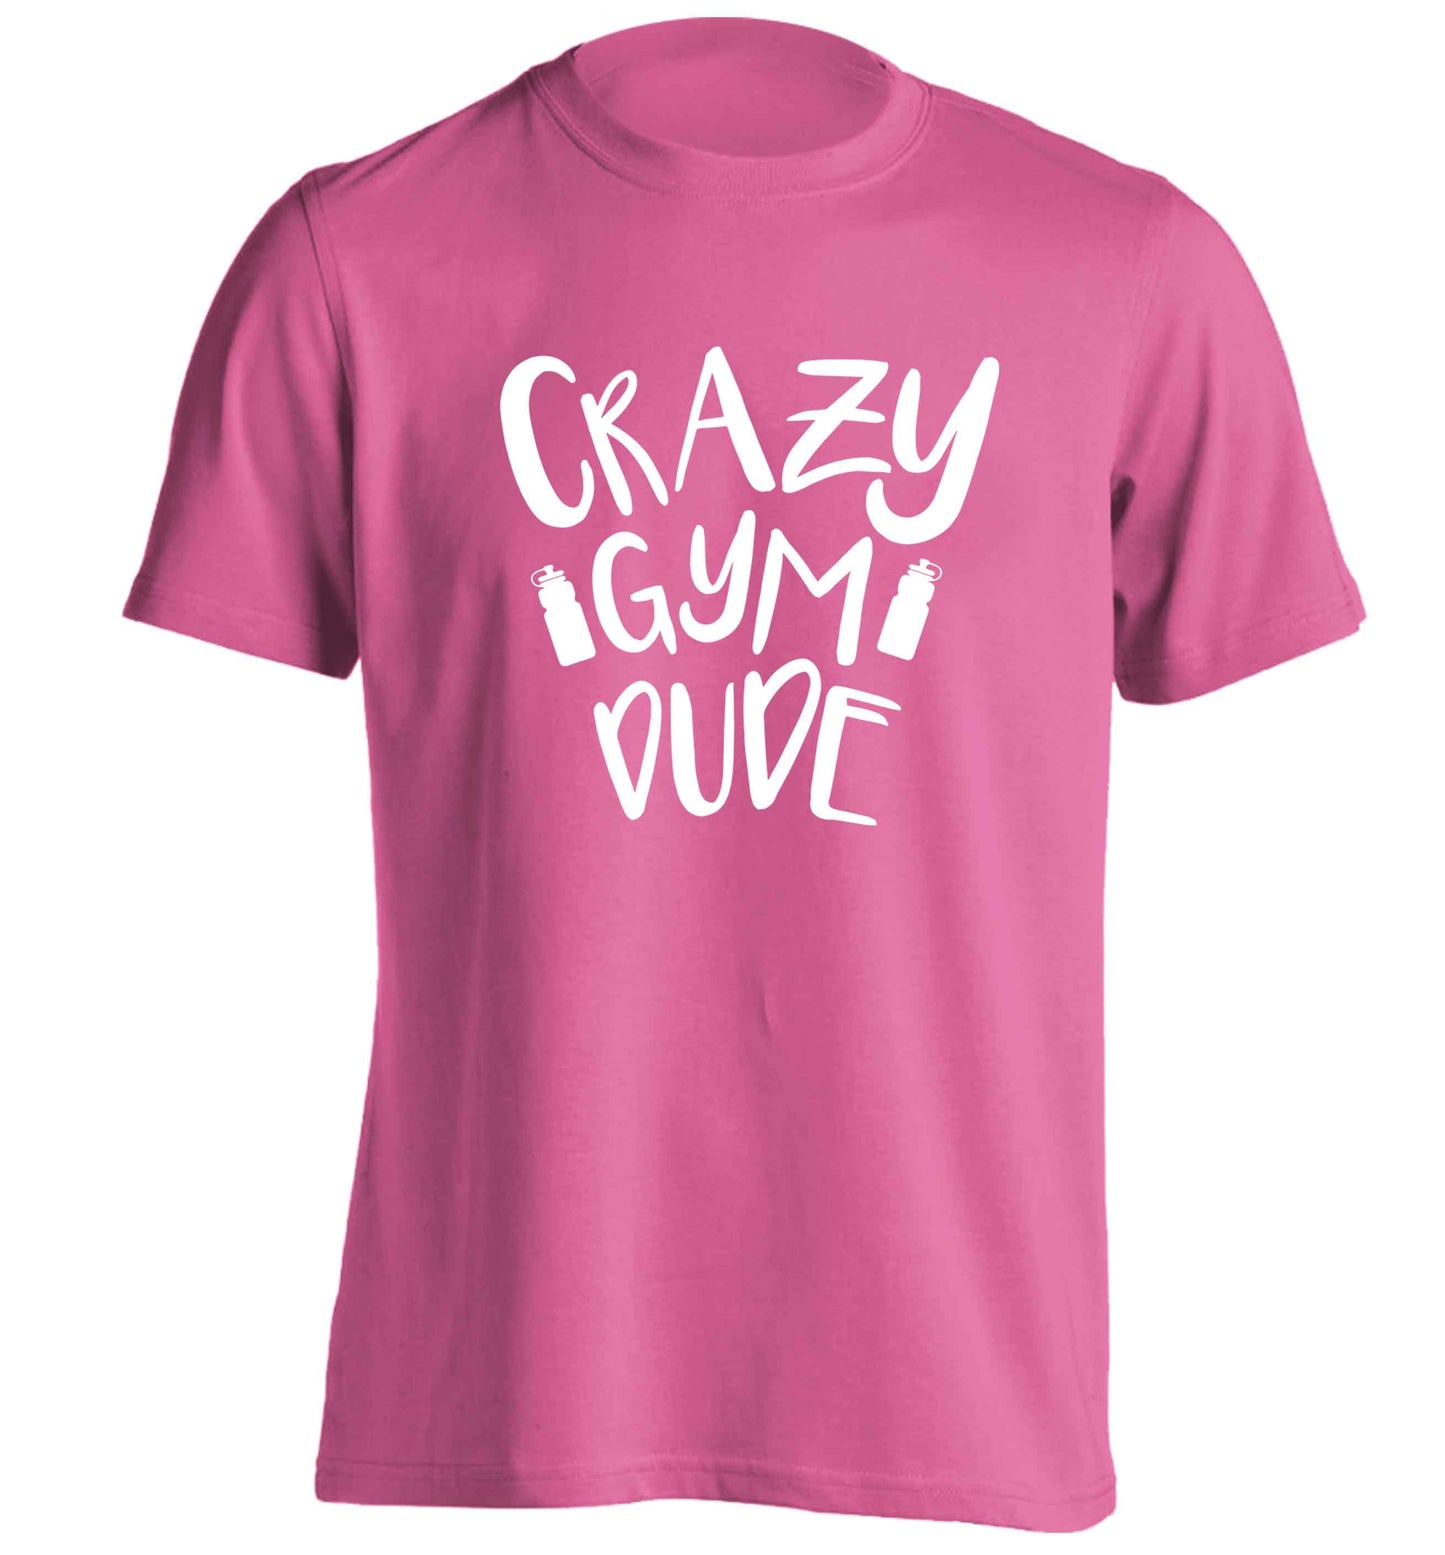 Crazy gym dude adults unisex pink Tshirt 2XL